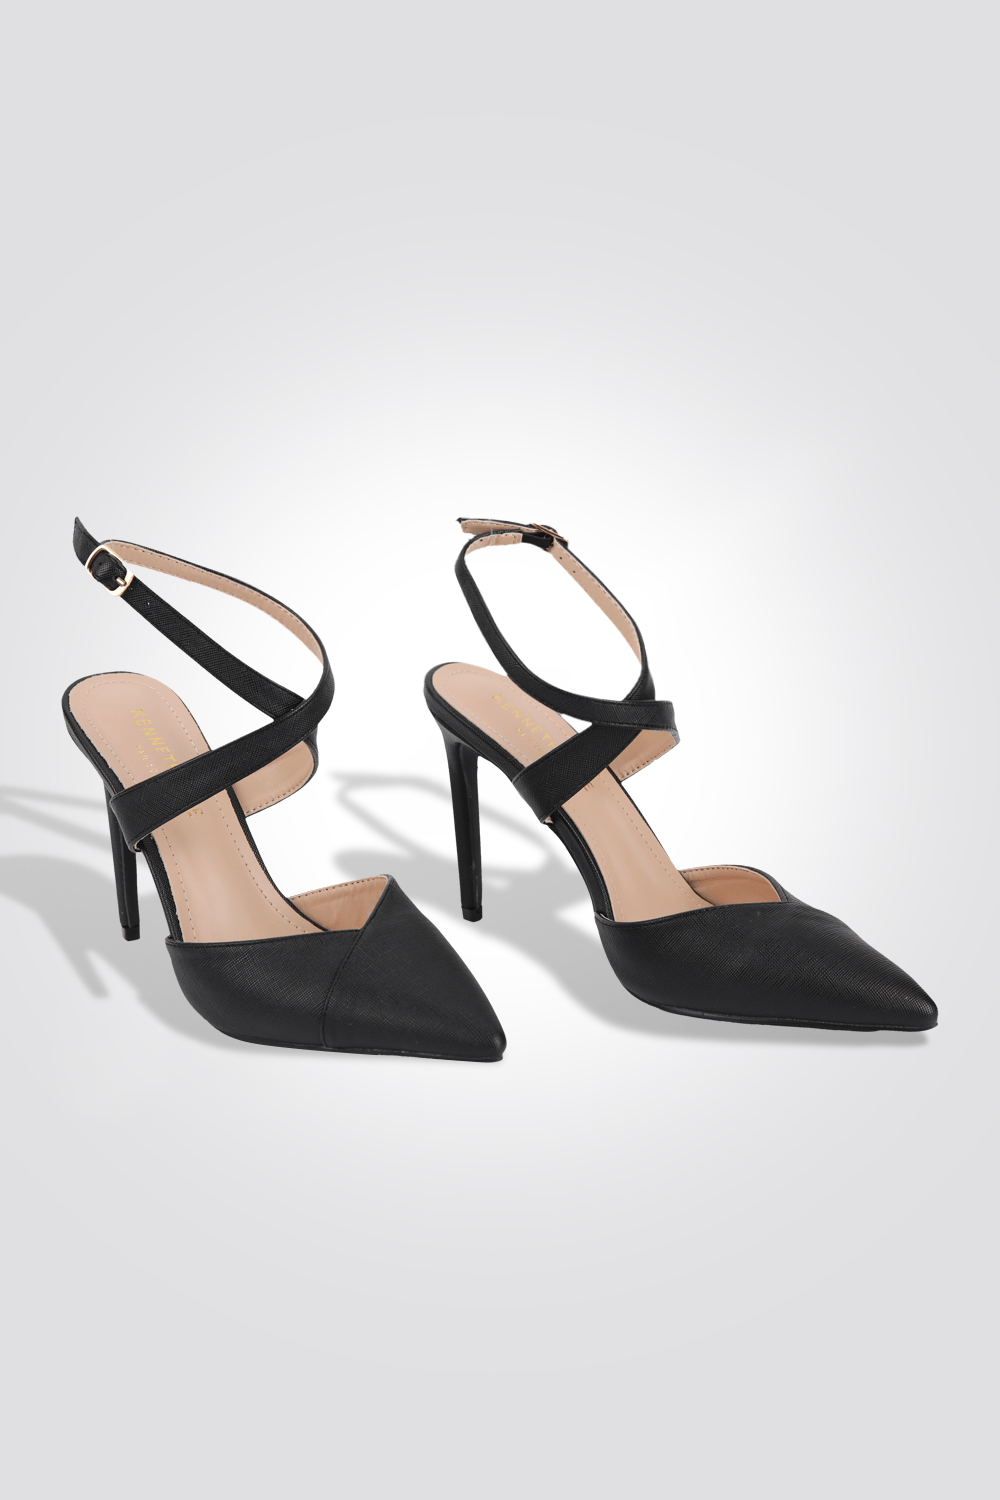 KENNETH COLE - נעלי עקב מעטפת 10 ס"מ בצבע שחור - MASHBIR//365